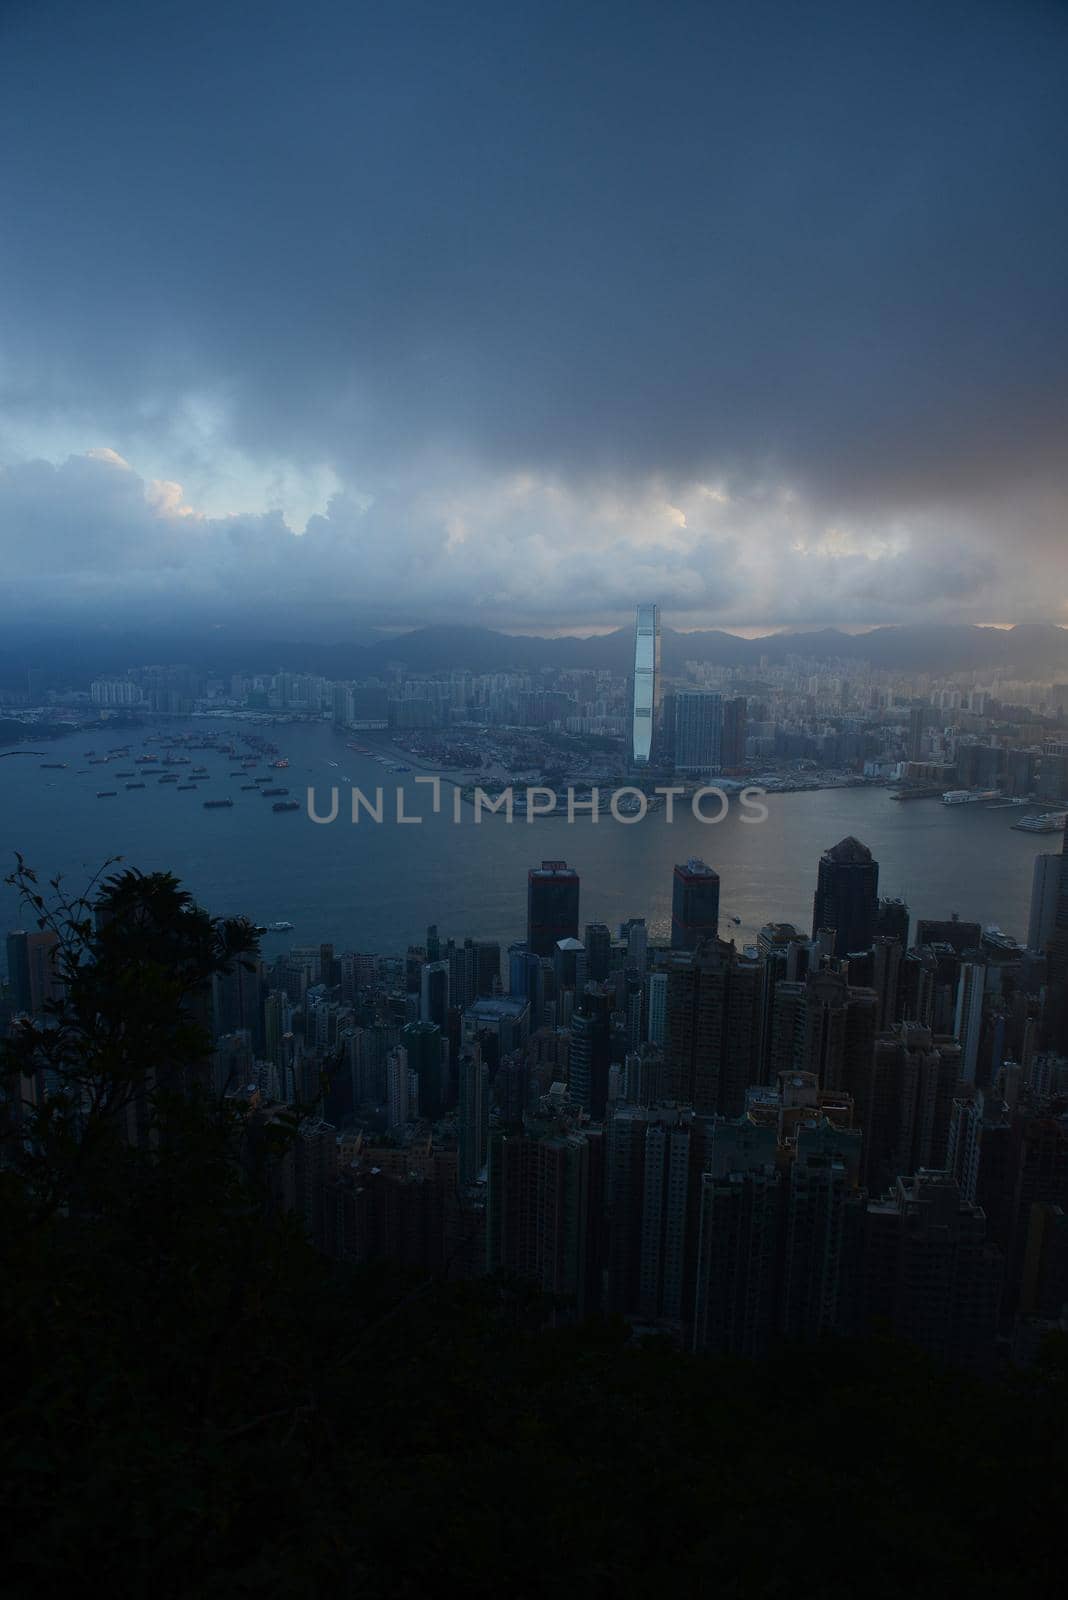 Hong kong sunrise scene from the peak